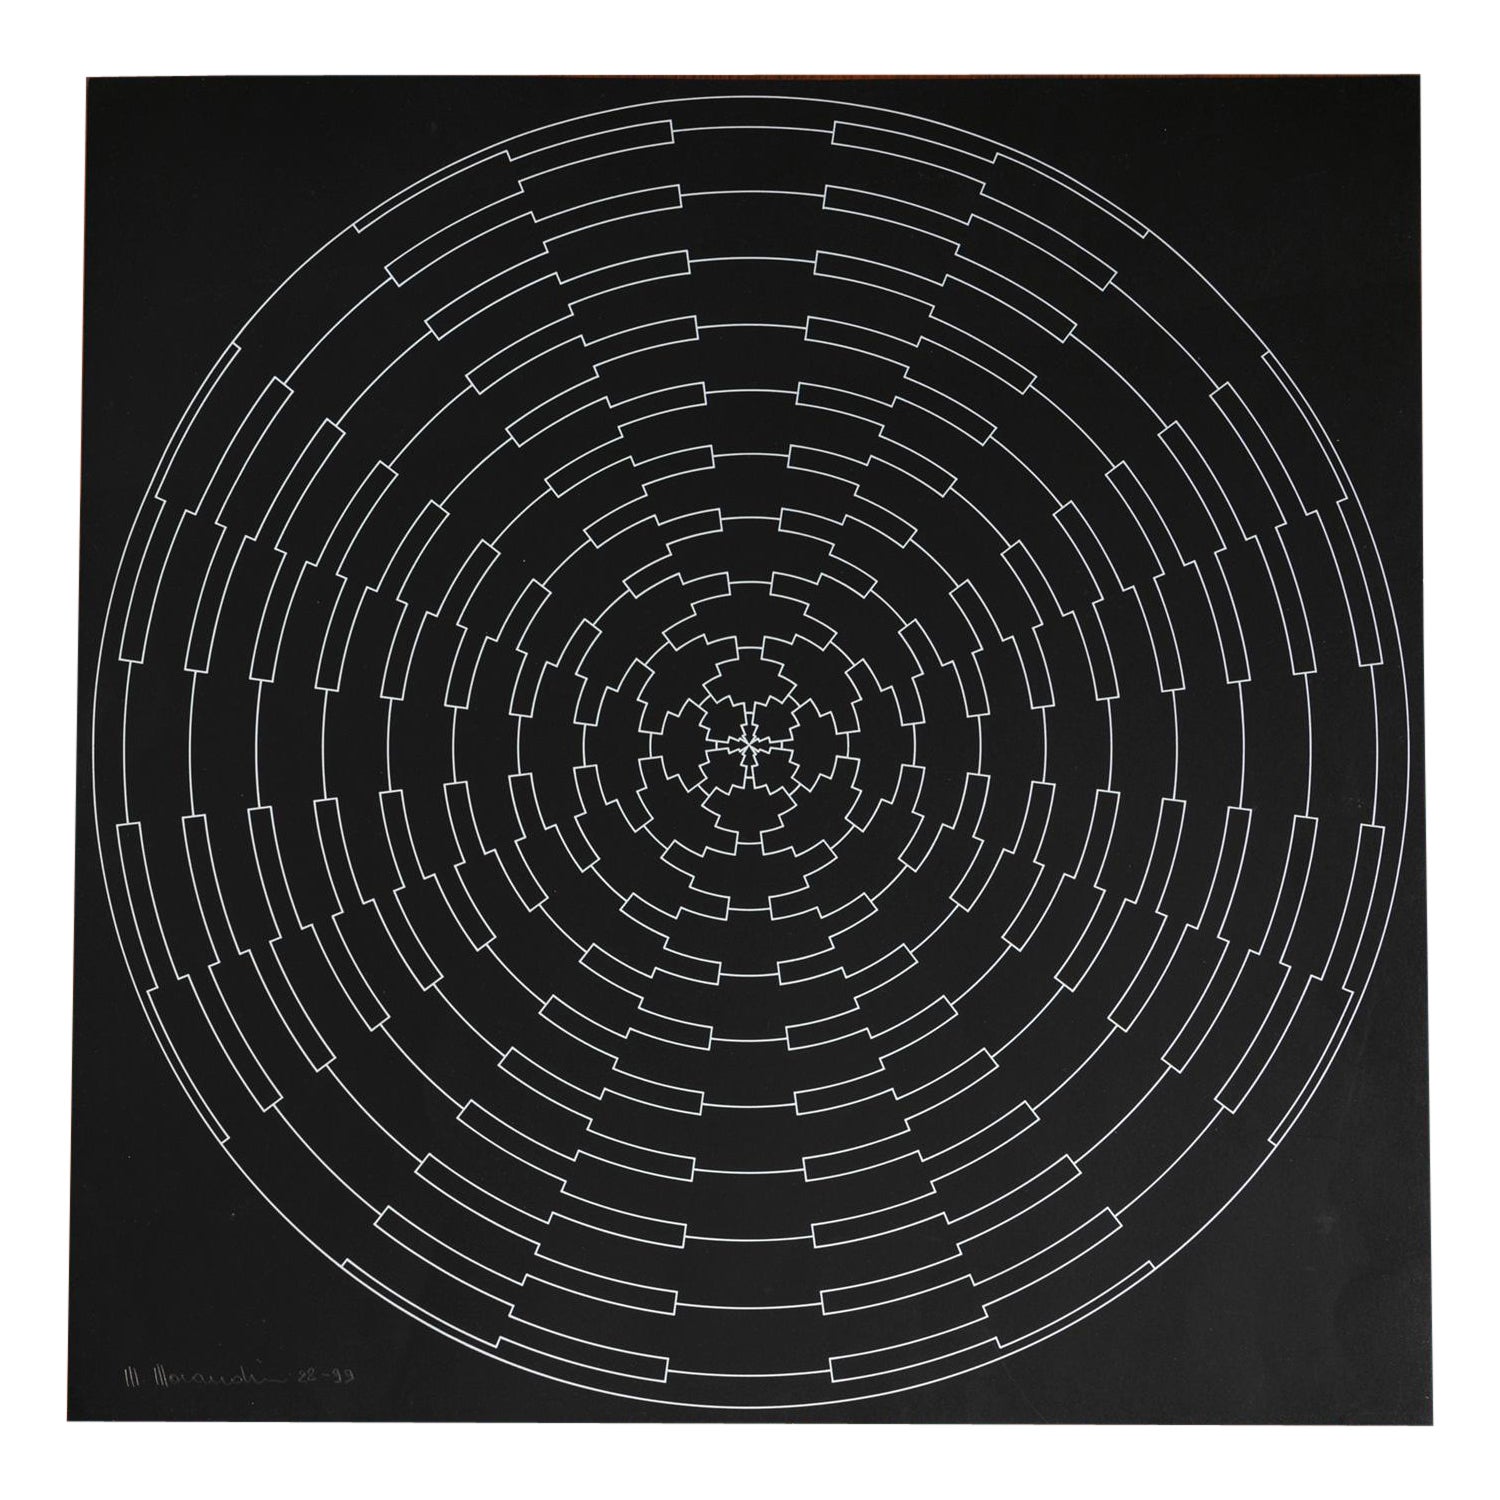 Impression sur soie abstraite géométrique noire et blanche par Marcello Morandini, Italie, années 1980